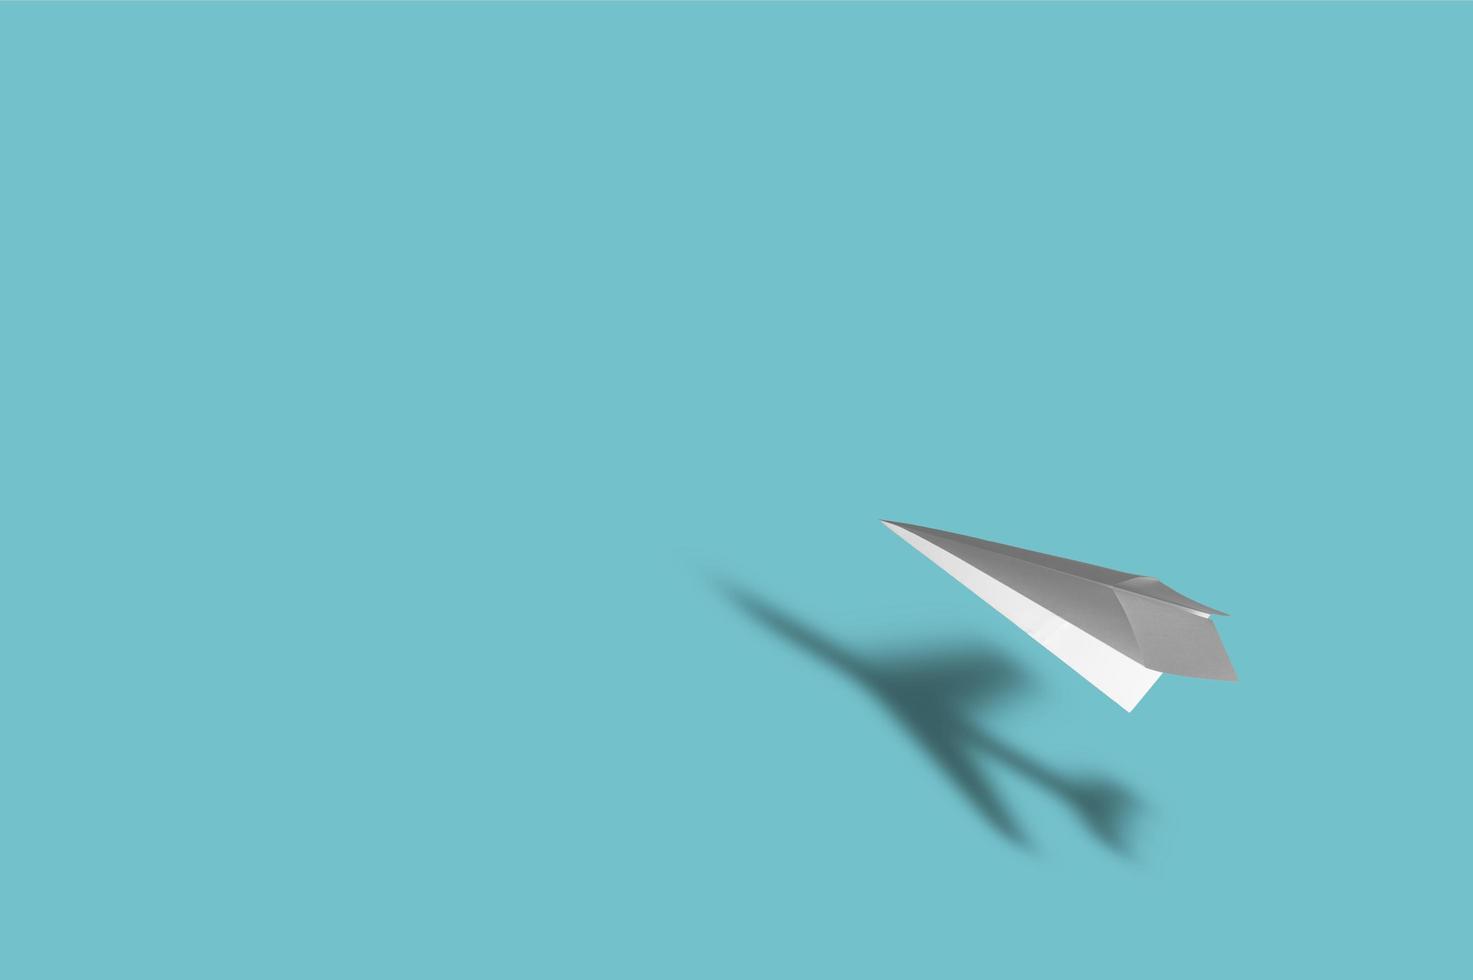 Papierflugzeug mit dem Schatten eines realen Flugzeugs auf blauem Hintergrund foto